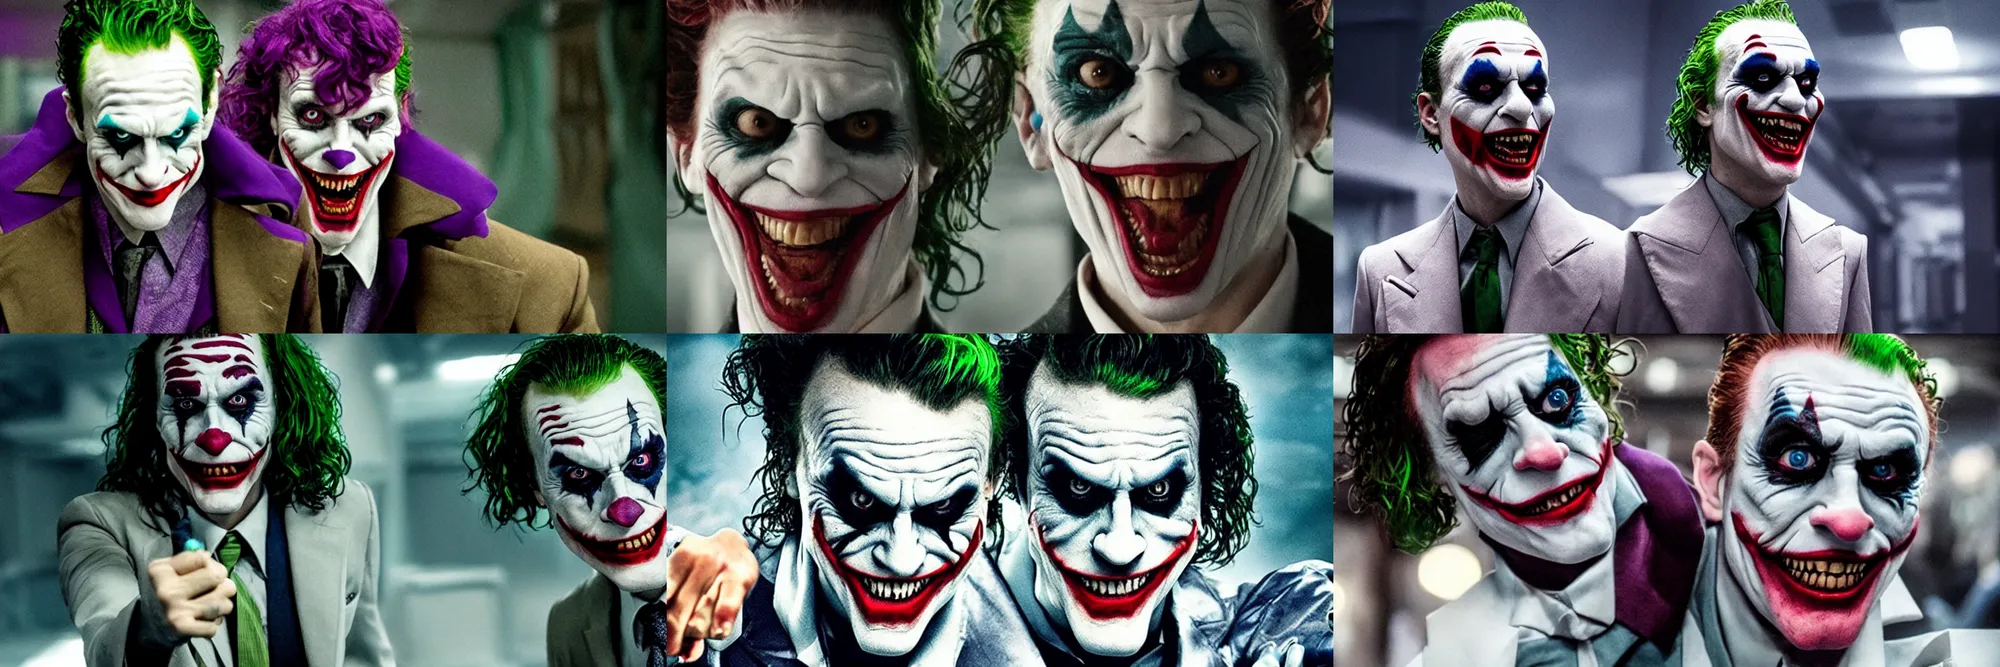 Futuristic Joker movie, film still | Stable Diffusion | OpenArt